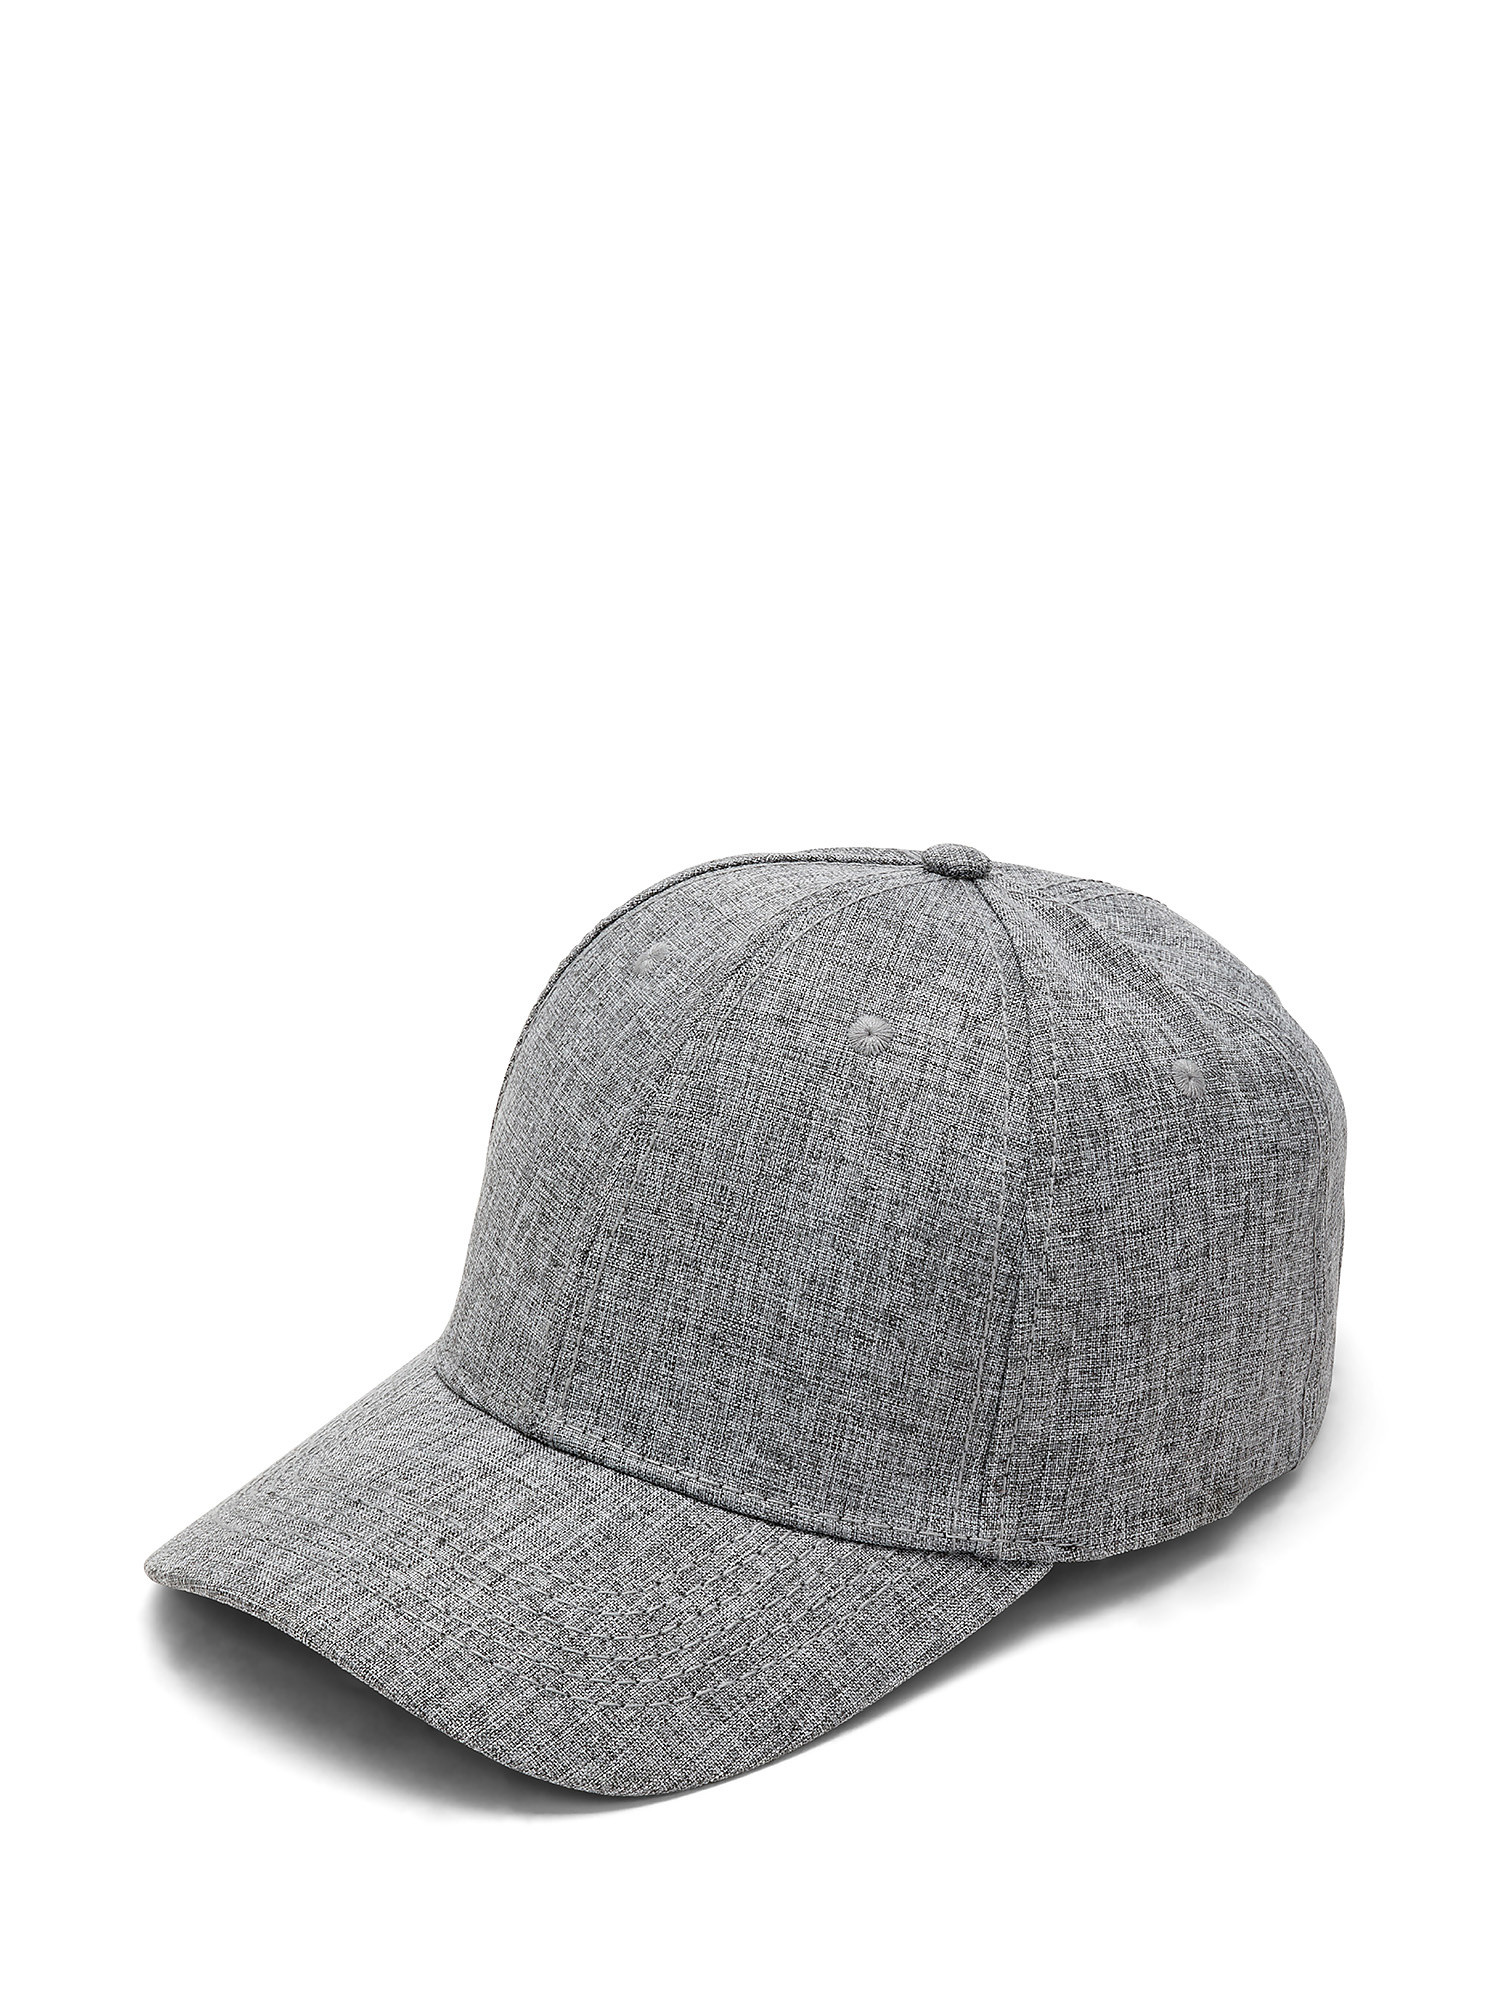 Luca D'Altieri - Baseball cap, Light Grey, large image number 0